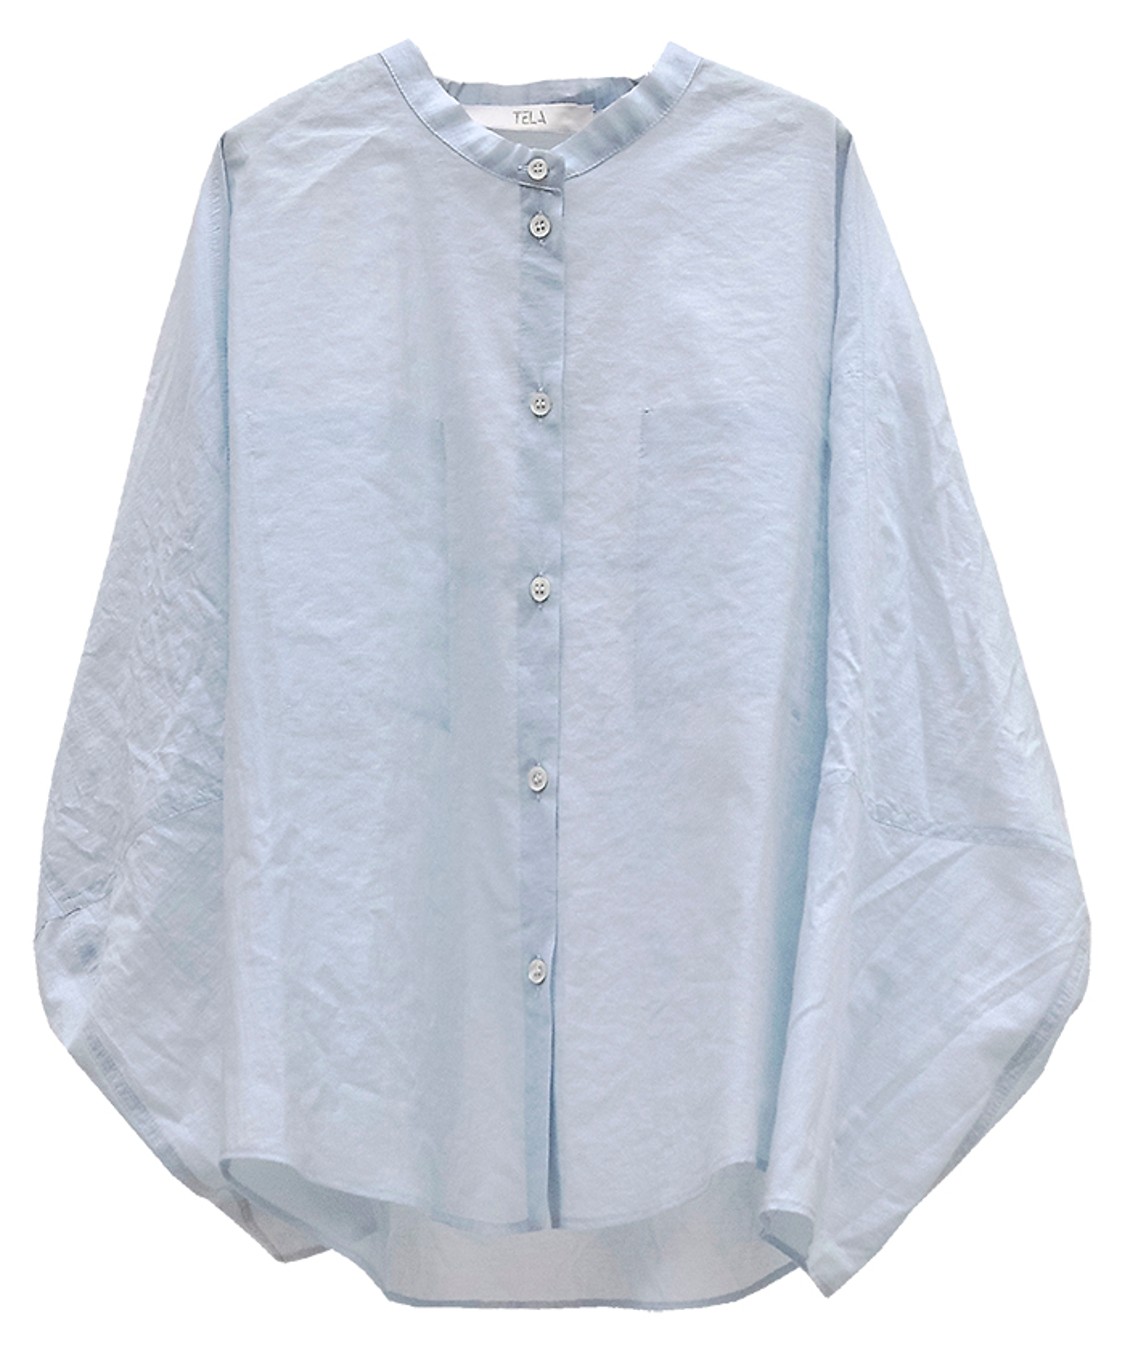 shop Tela  Camicie: Camicie Tela, modello ampia, manica lunga ampia, girocollo, chiusura davanti con bottoni.

Composizione: 100% cotone. number 1705